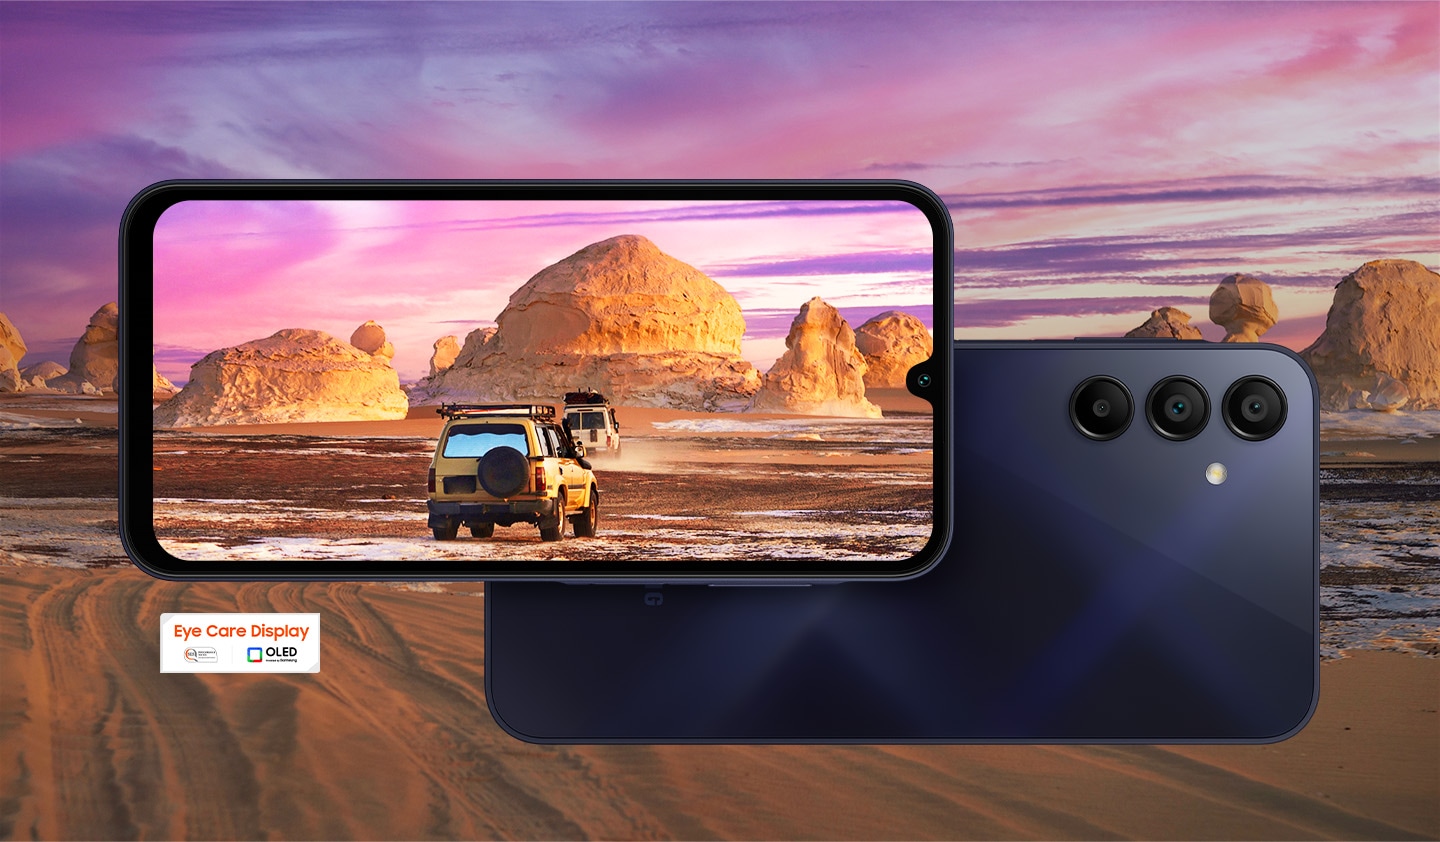 U pozadini je prikazan prekrasan krajolik pustinje.  U prvom planu prikazana su dva Galaxy A15 uređaja, od kojih lijevi prikazuje ekran, a desni stražnju stranu.  Krajolik se preklapa sa zaslonom uređaja s lijeve strane i prikazuje dva kamiona kako voze u pustinju.  U donjem lijevom kutu prikazan je logotip Eye Care Display.